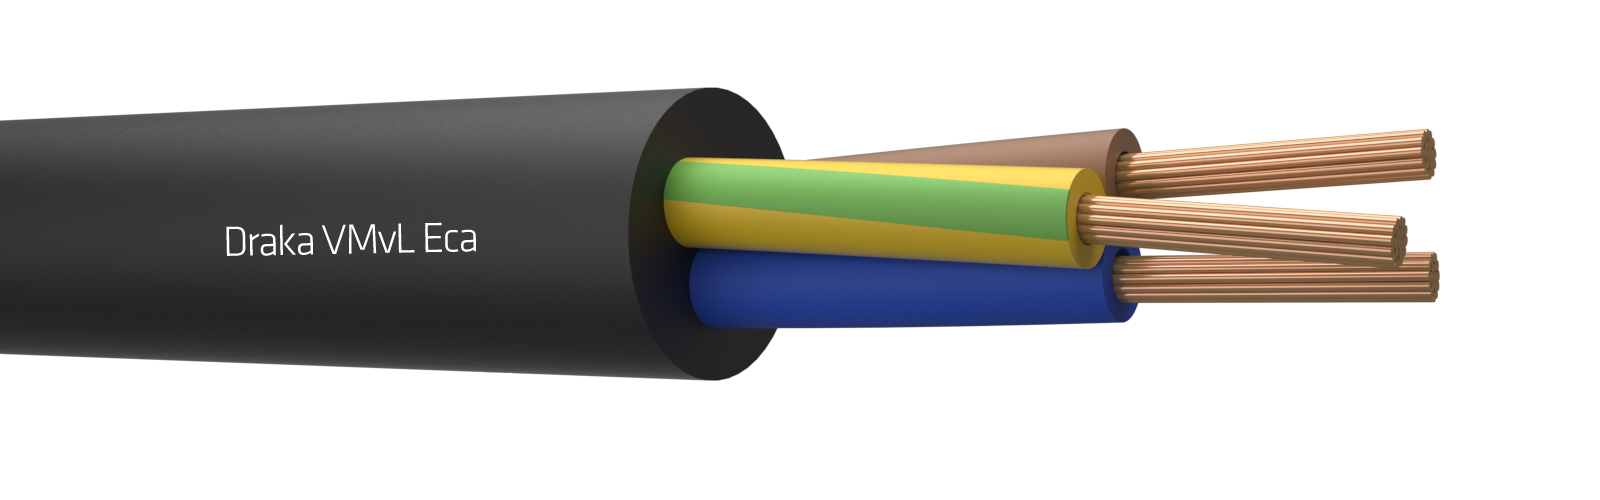 Flex Cable - 3G1.5